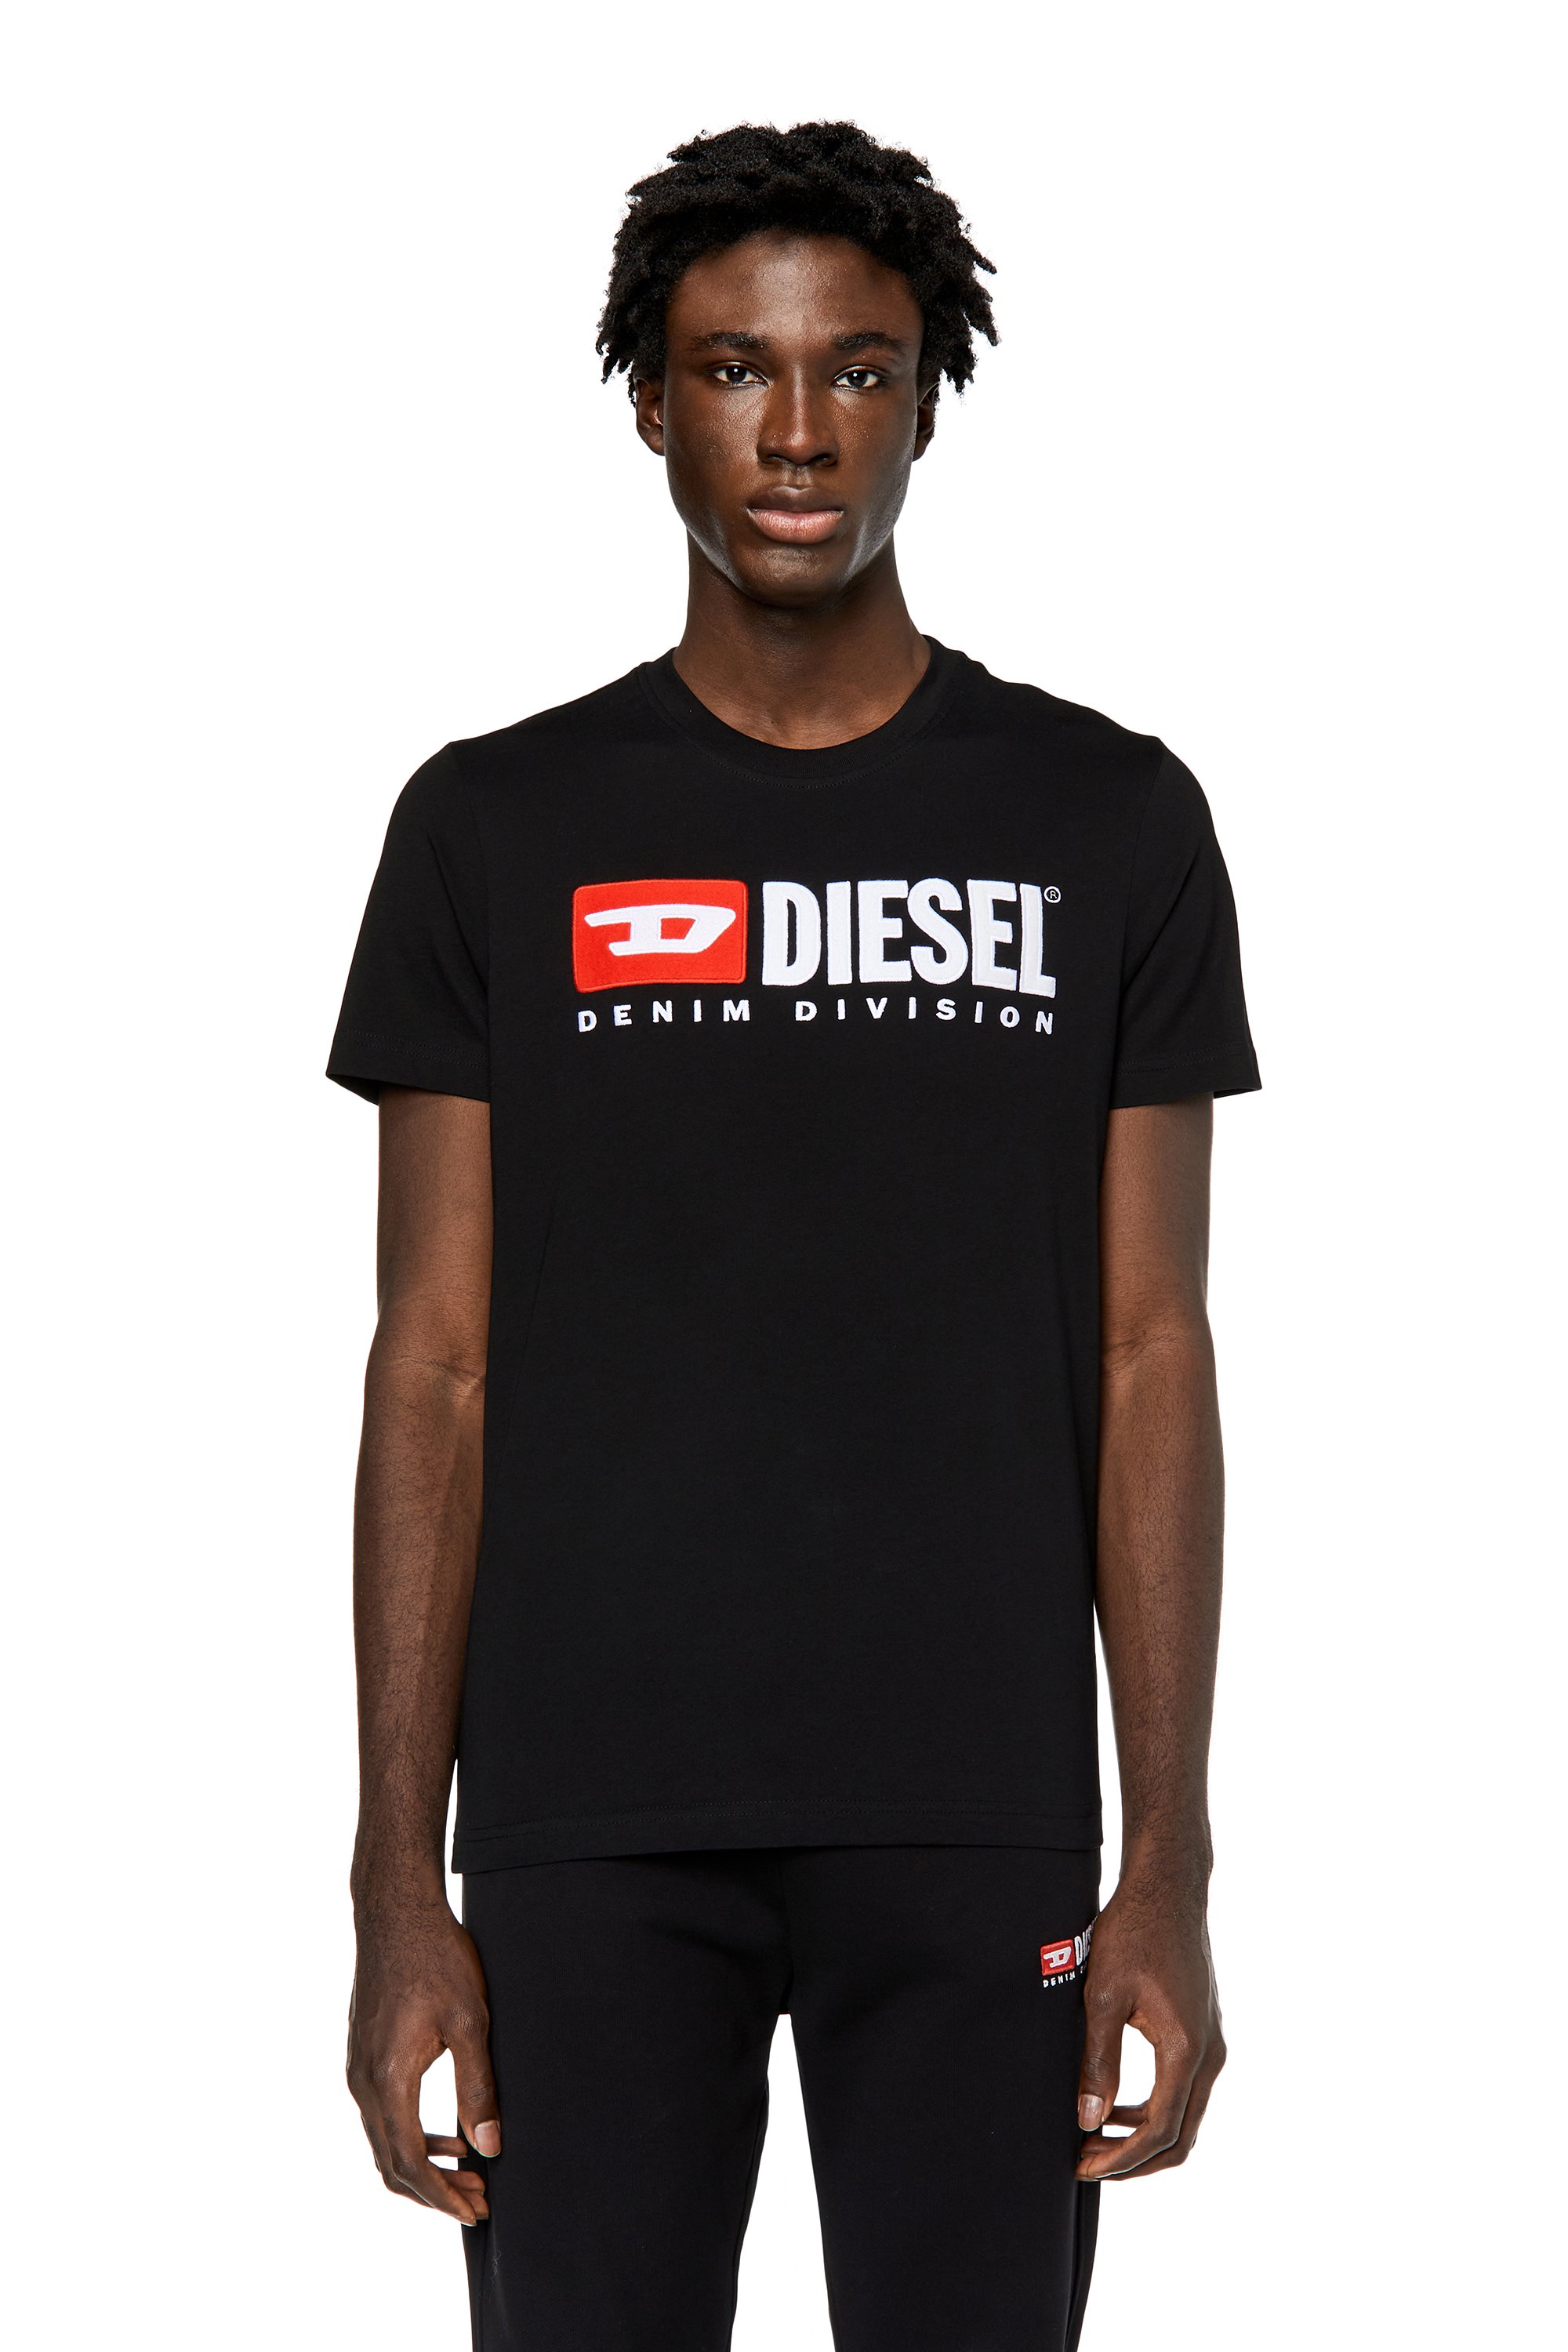 Diesel - T-DIEGOR-DIV, Negro - Image 1